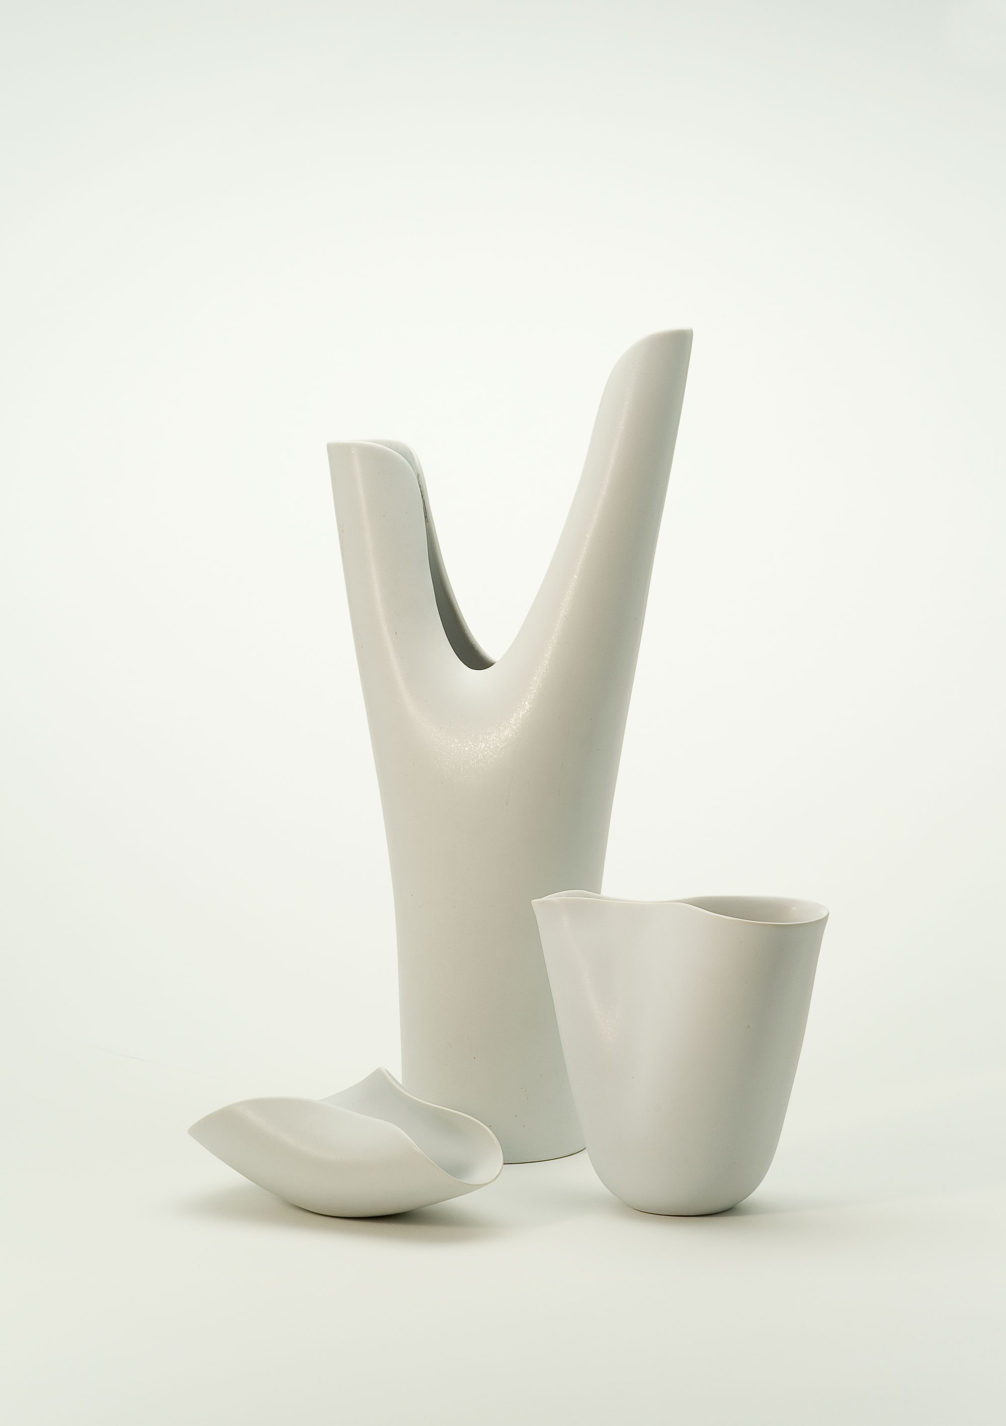 Deux vases de forme et de taille différentes, et un bol de porcelaine blanc cassé.